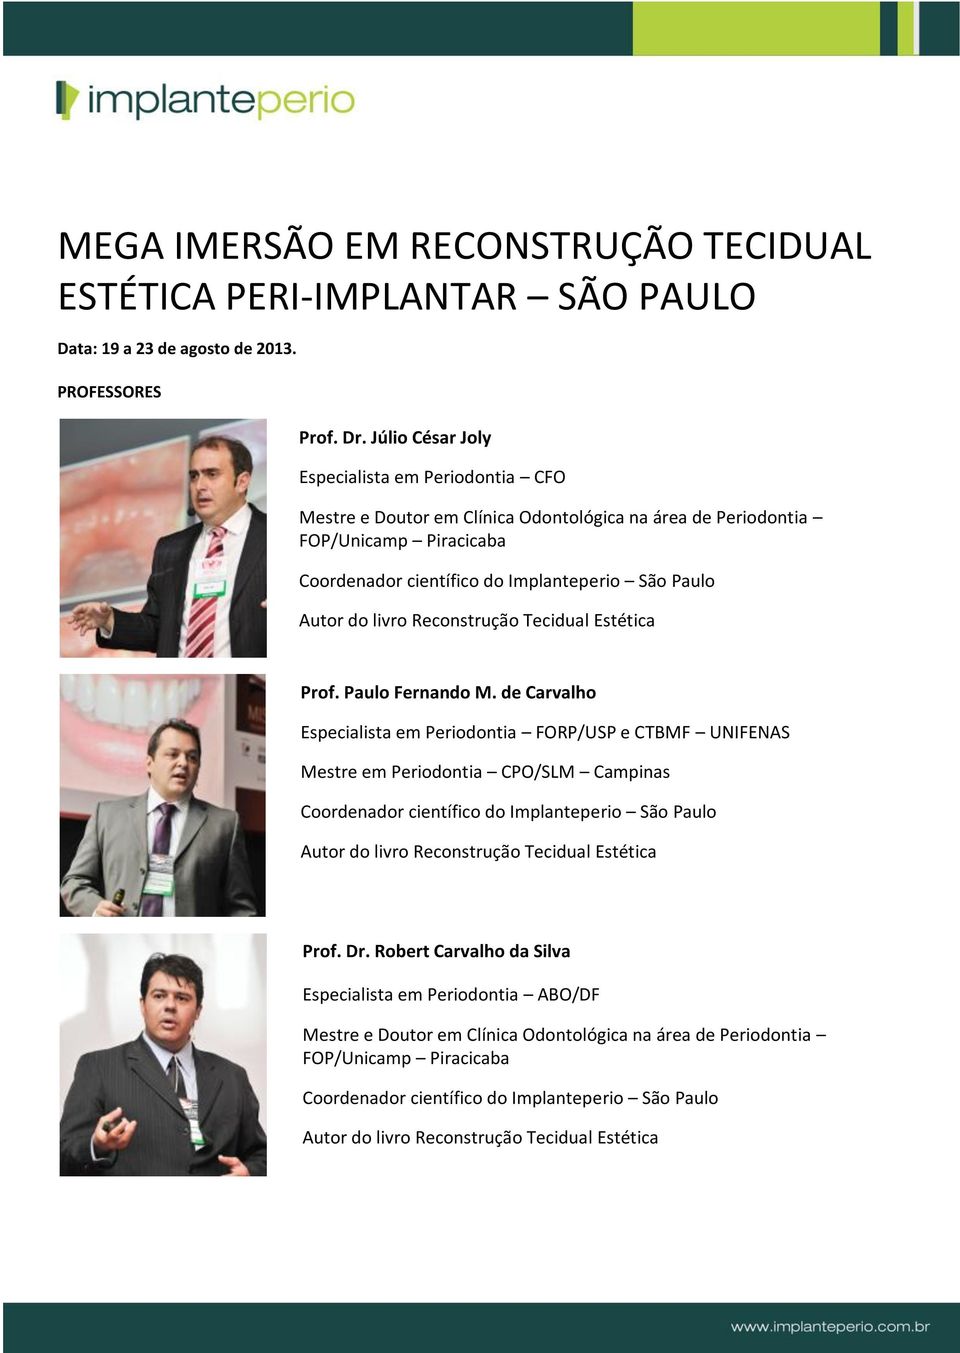 Prof. Paulo Fernando M. de Carvalho Especialista em Periodontia FORP/USP e CTBMF UNIFENAS Mestre em Periodontia CPO/SLM Campinas Prof.